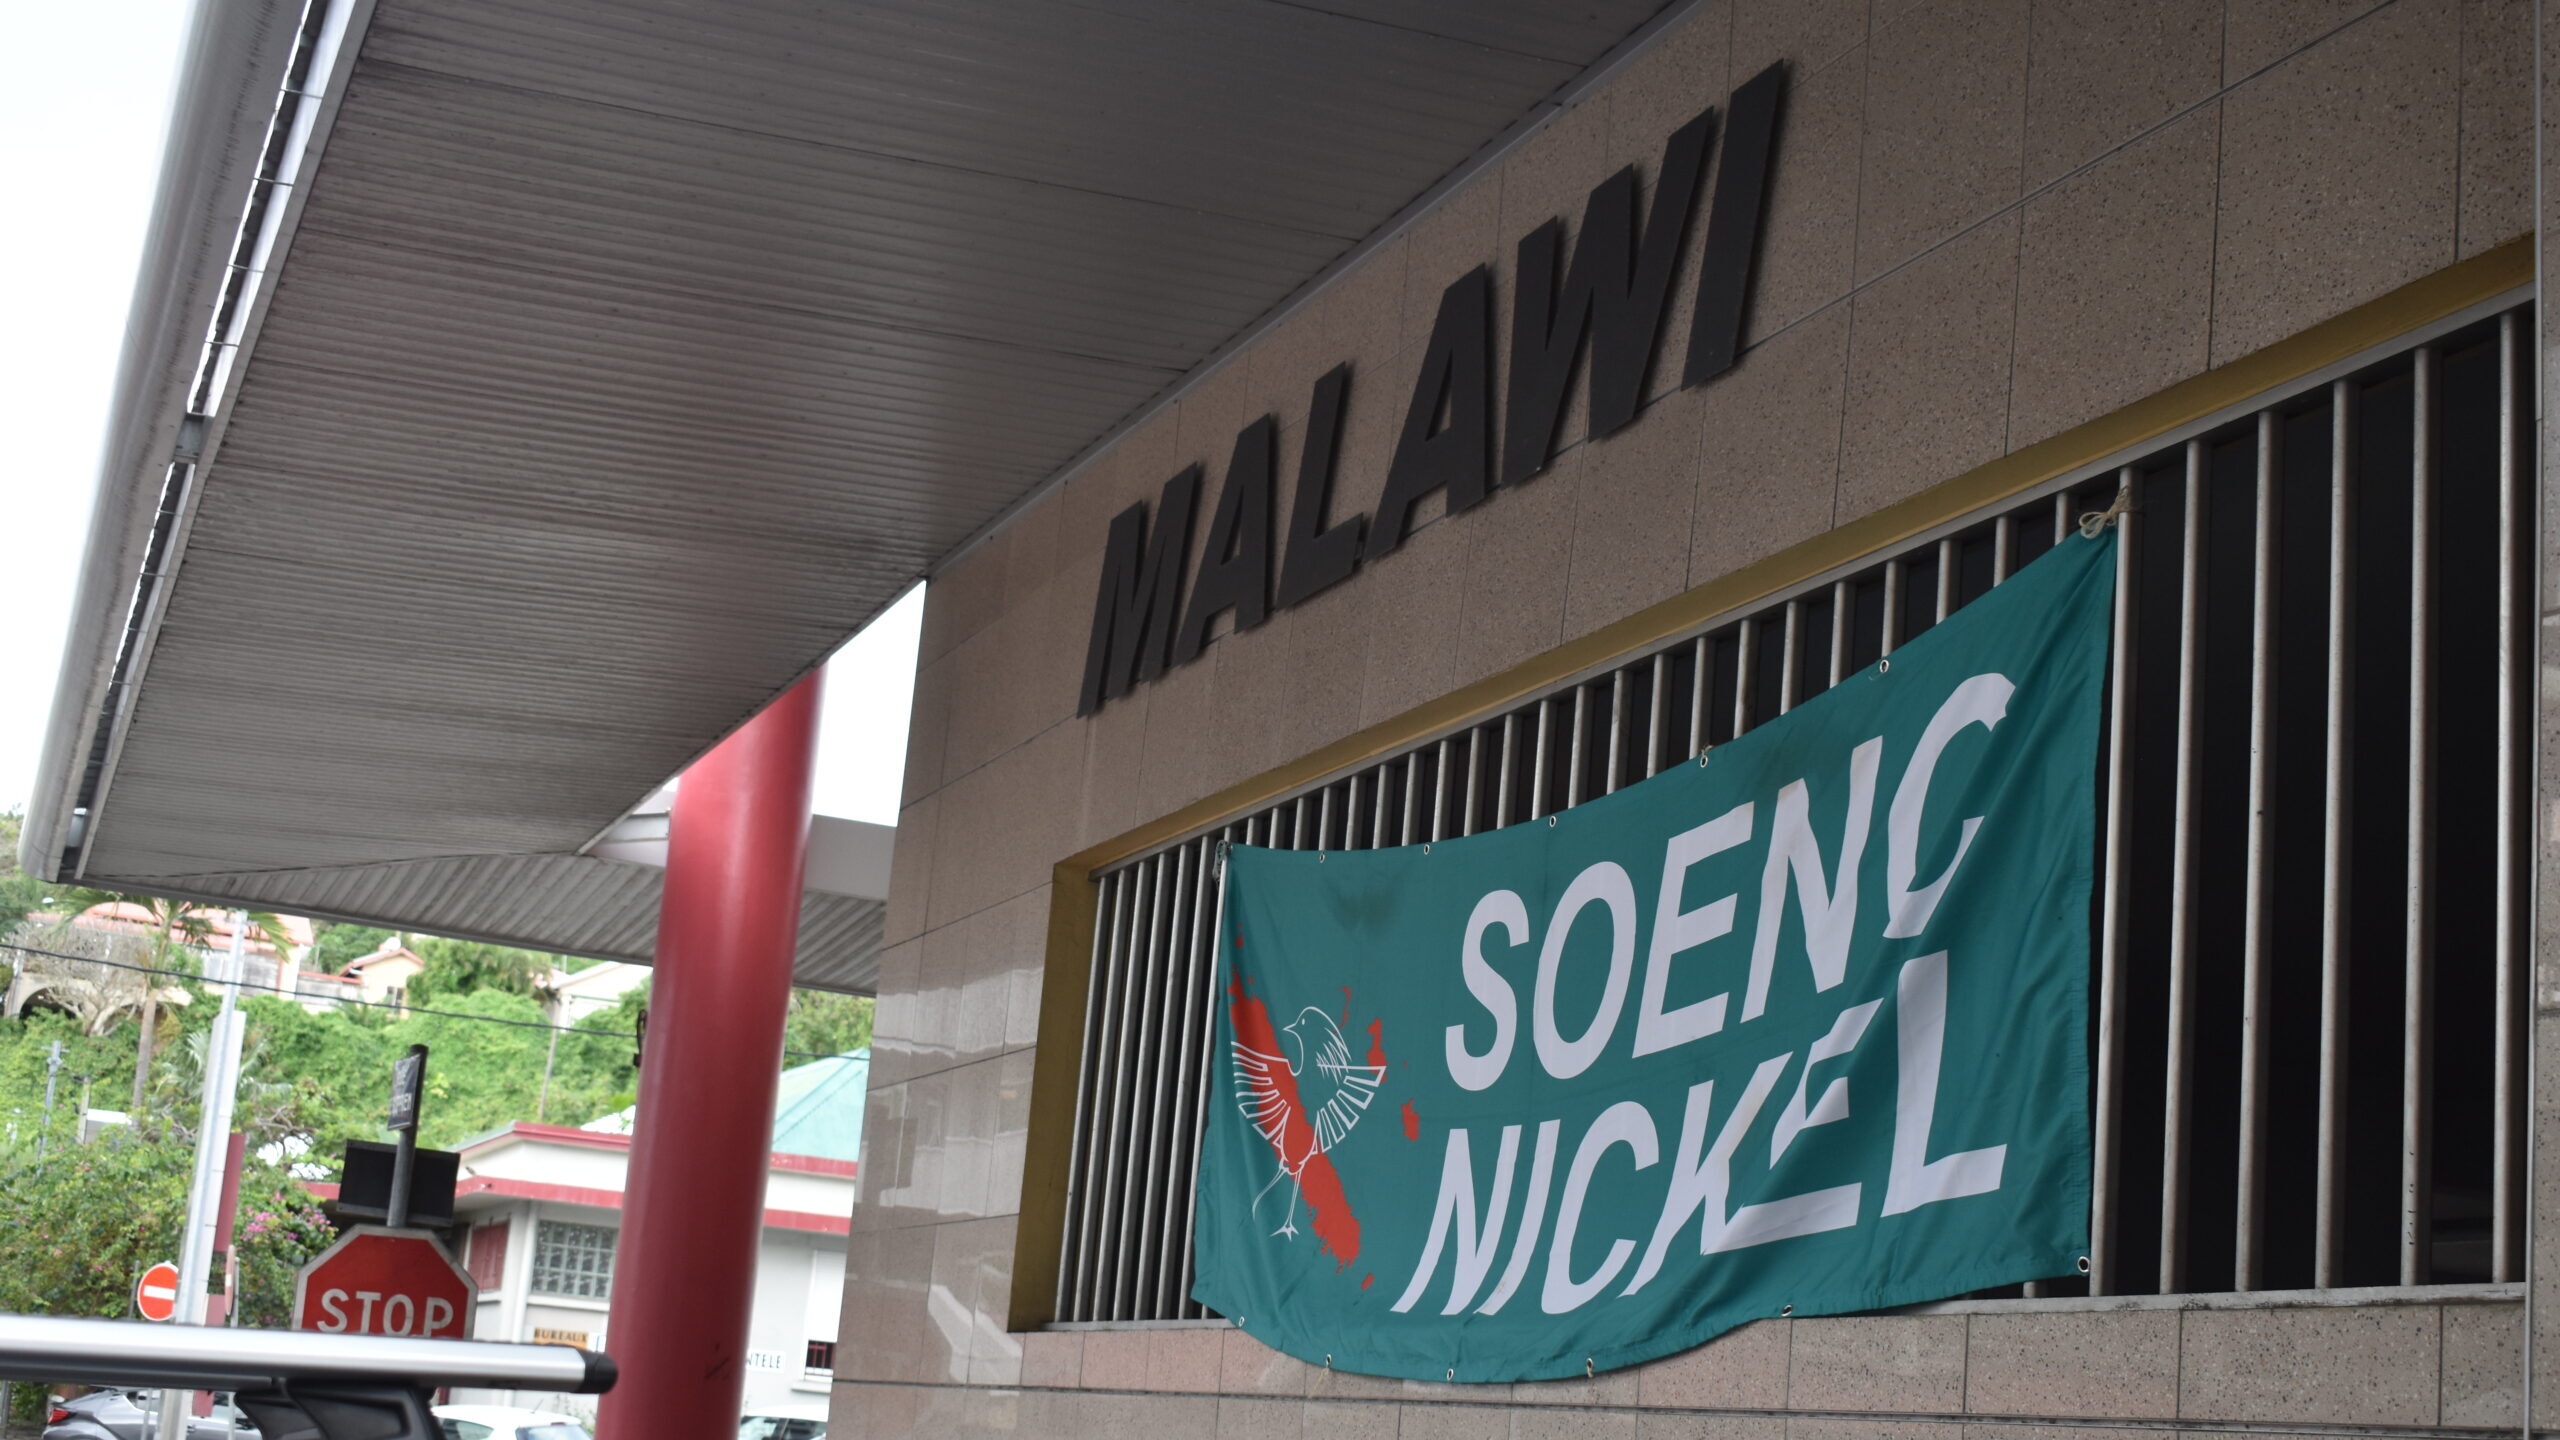 La section Prony Resources du SOENC Nickel en grève ! : « Aujourd’hui, on a un vivier en interne et en Nouvelle-Calédonie, pourquoi aller chercher ailleurs alors qu’on a les compétences ? »